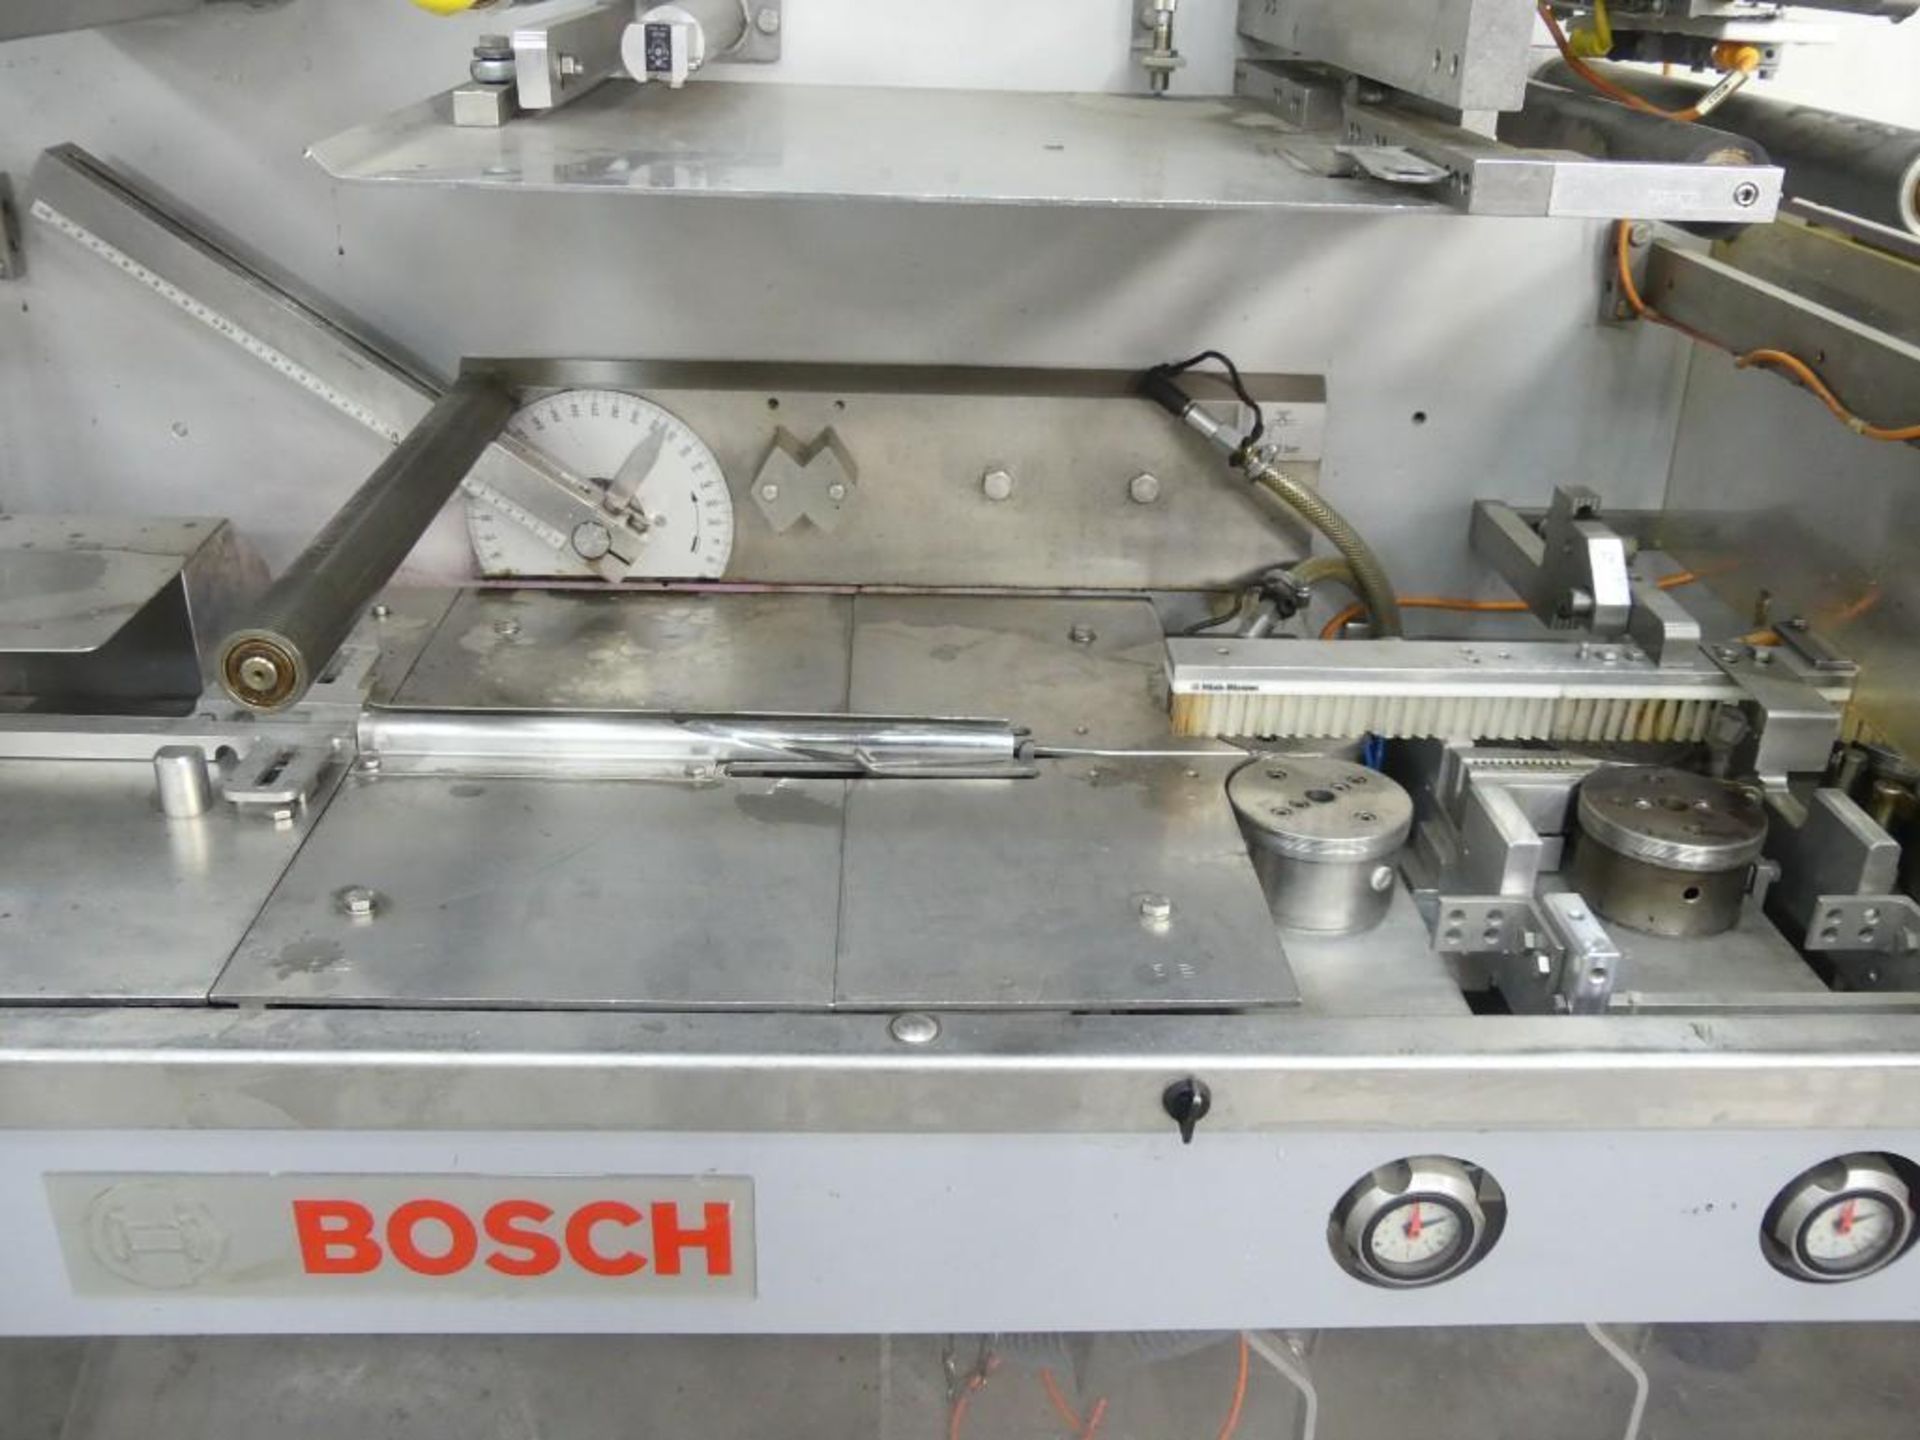 Bosch Sigpack HBM Flow Wrapper Print Registered - Image 11 of 22